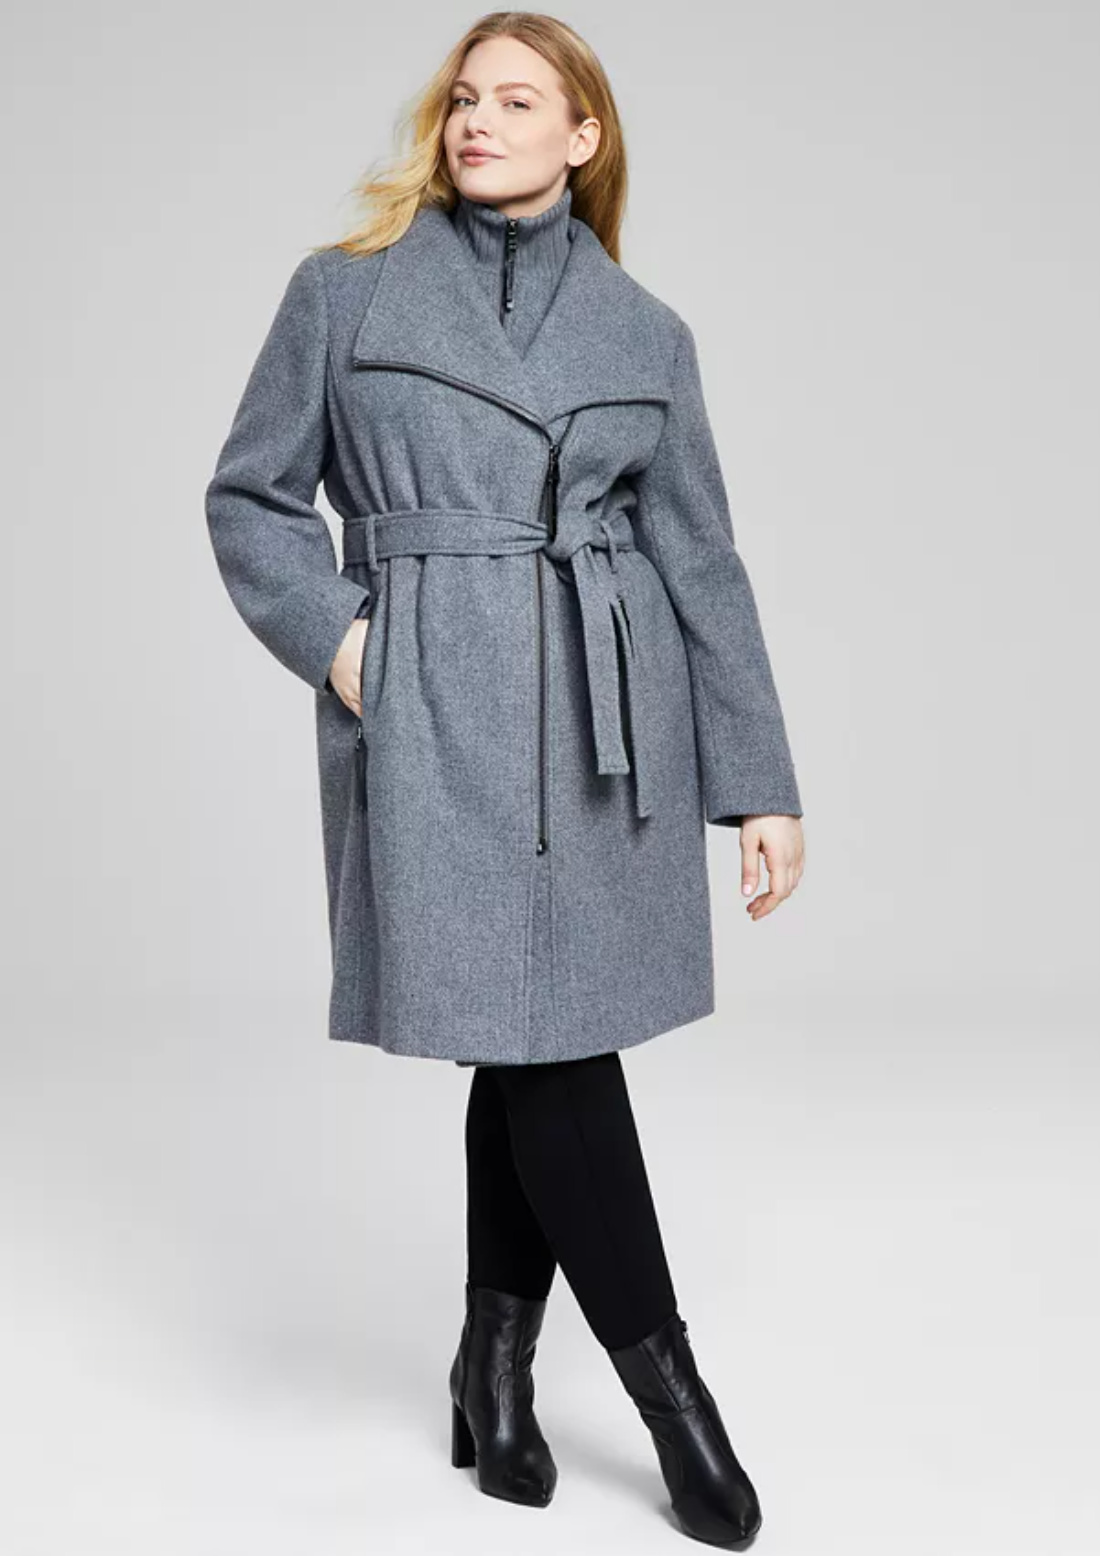 womens wool coats